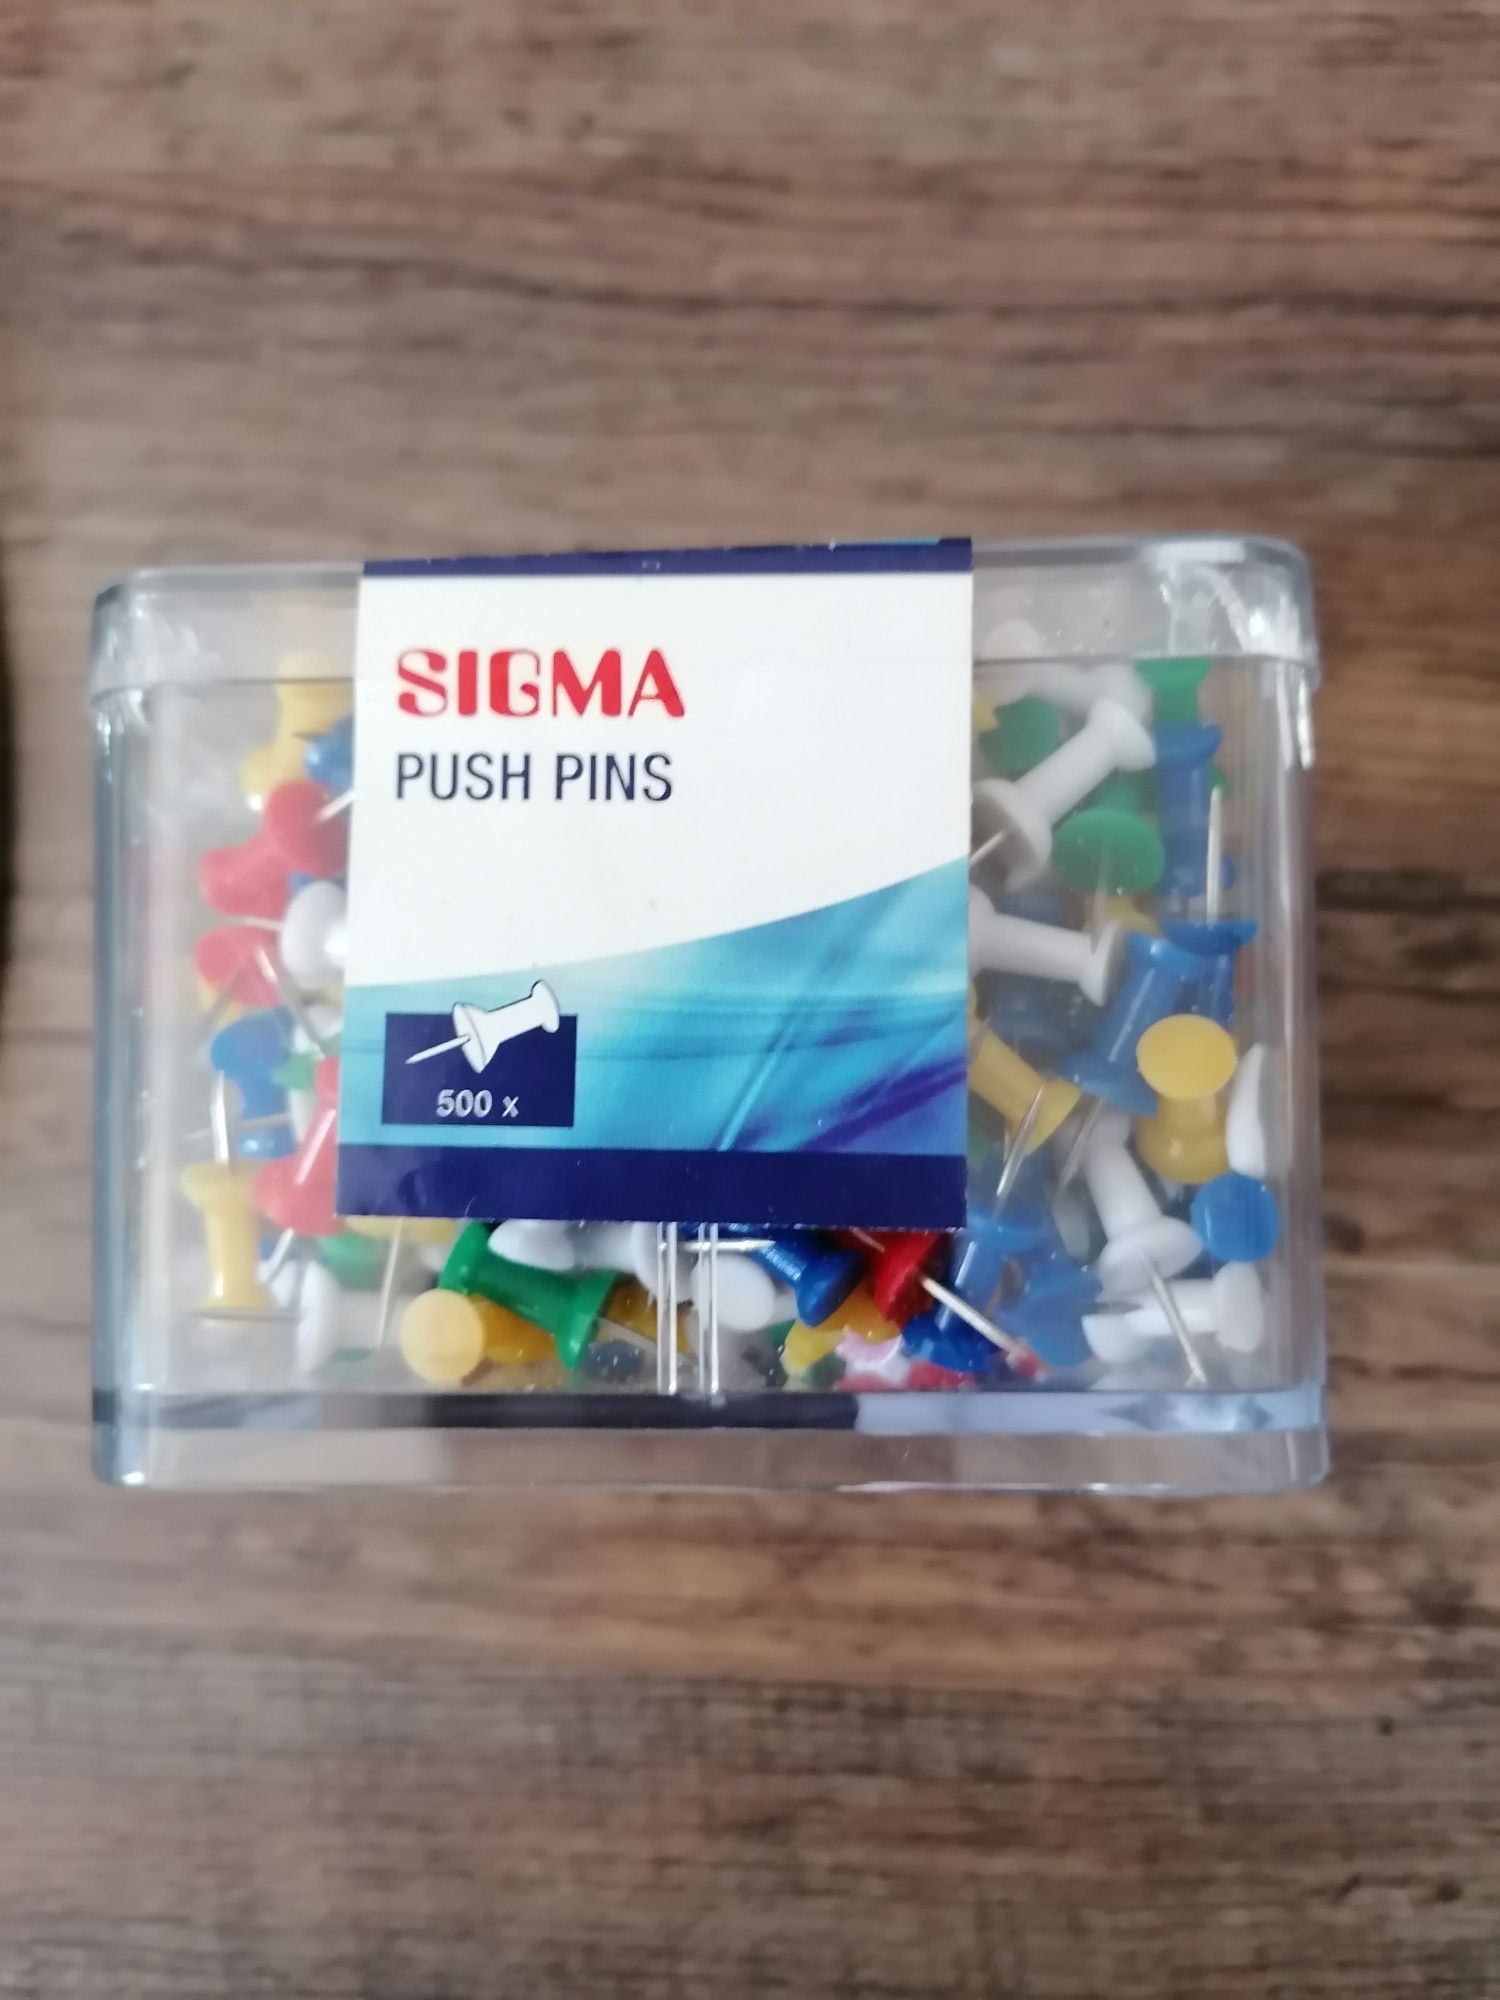 Sigma push pins